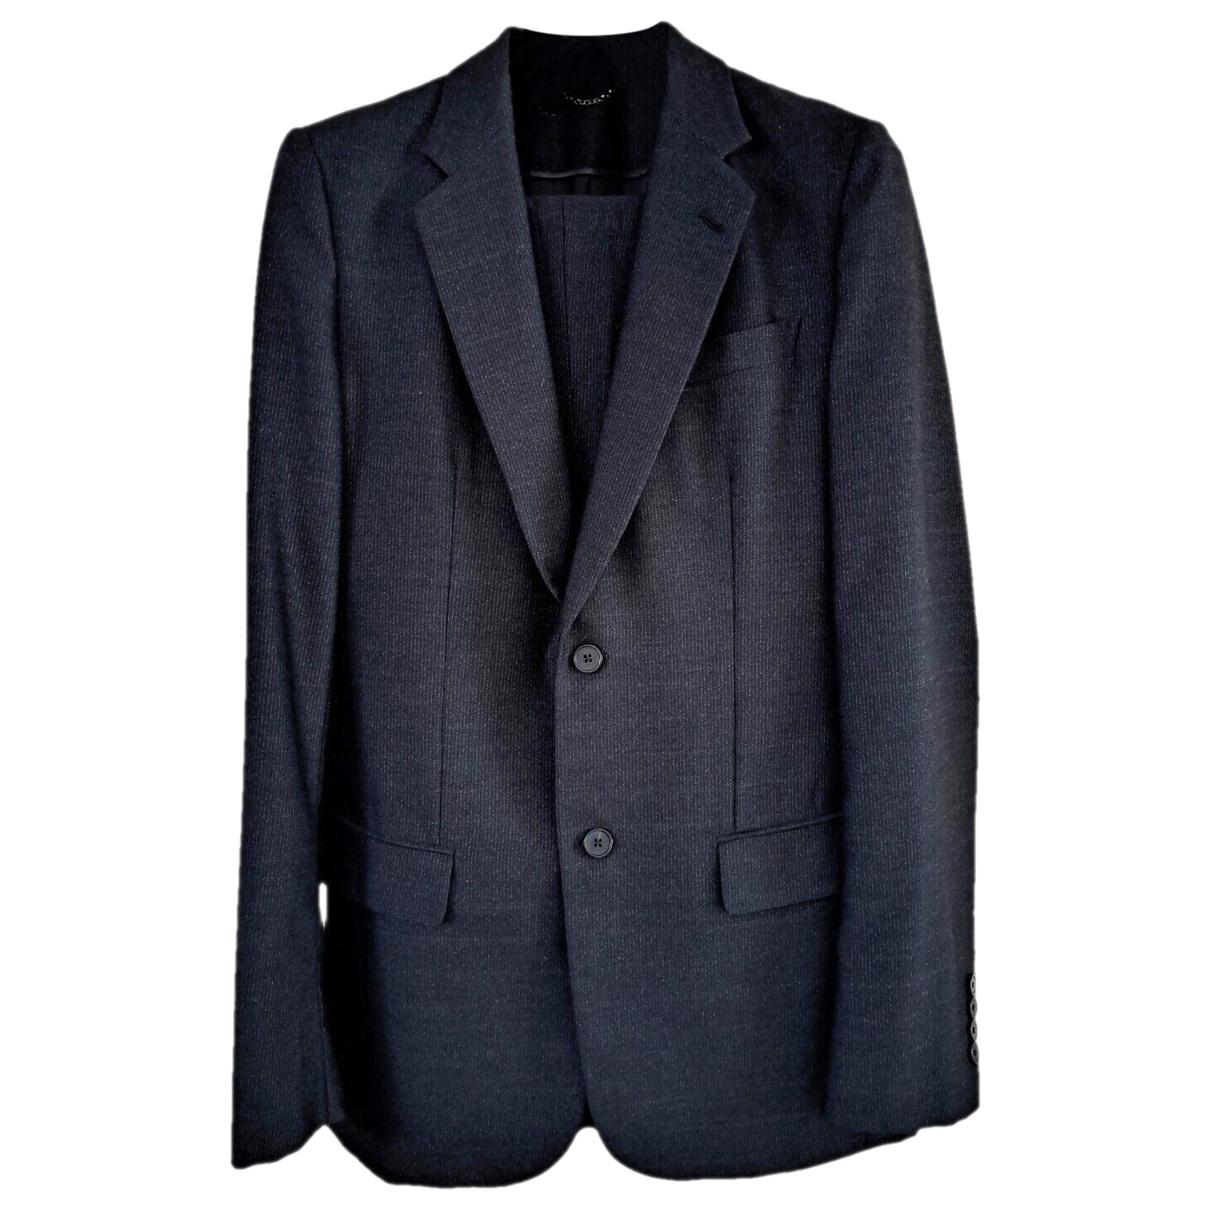 Las mejores ofertas en Vestido/Formal Louis Vuitton hombres